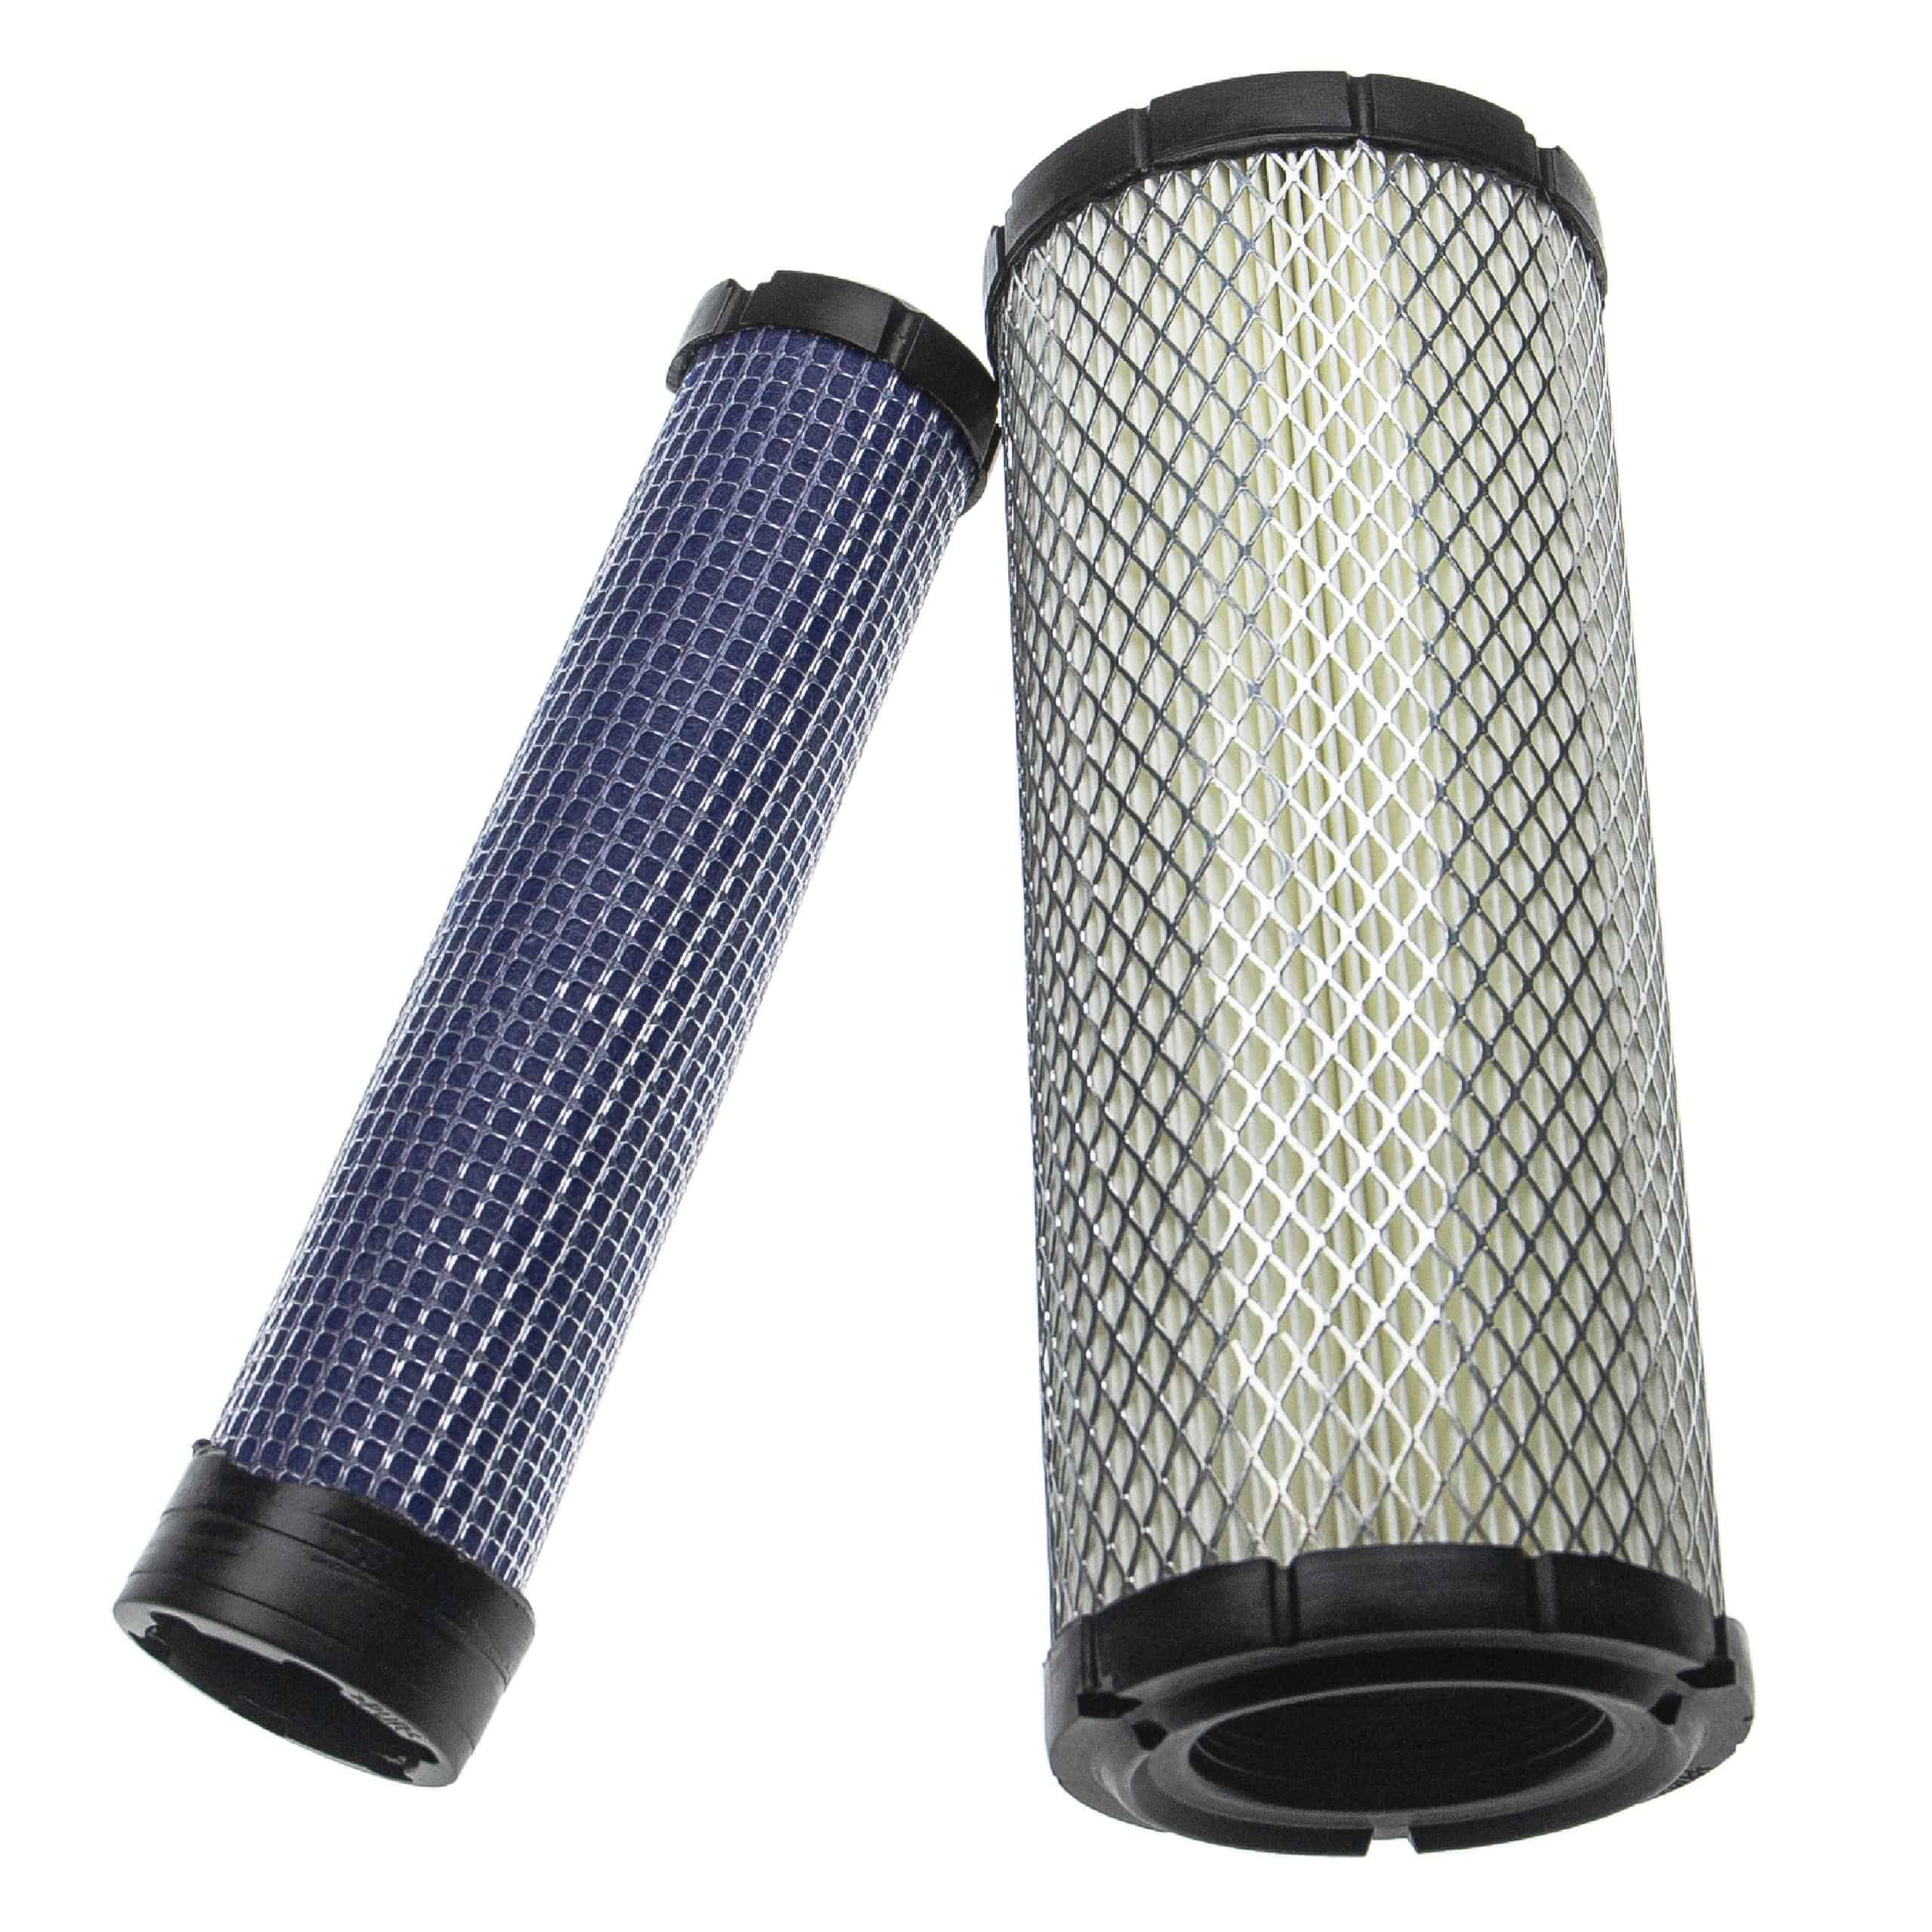 vhbw Filter Set - 1x inner filter, 1x outer filter